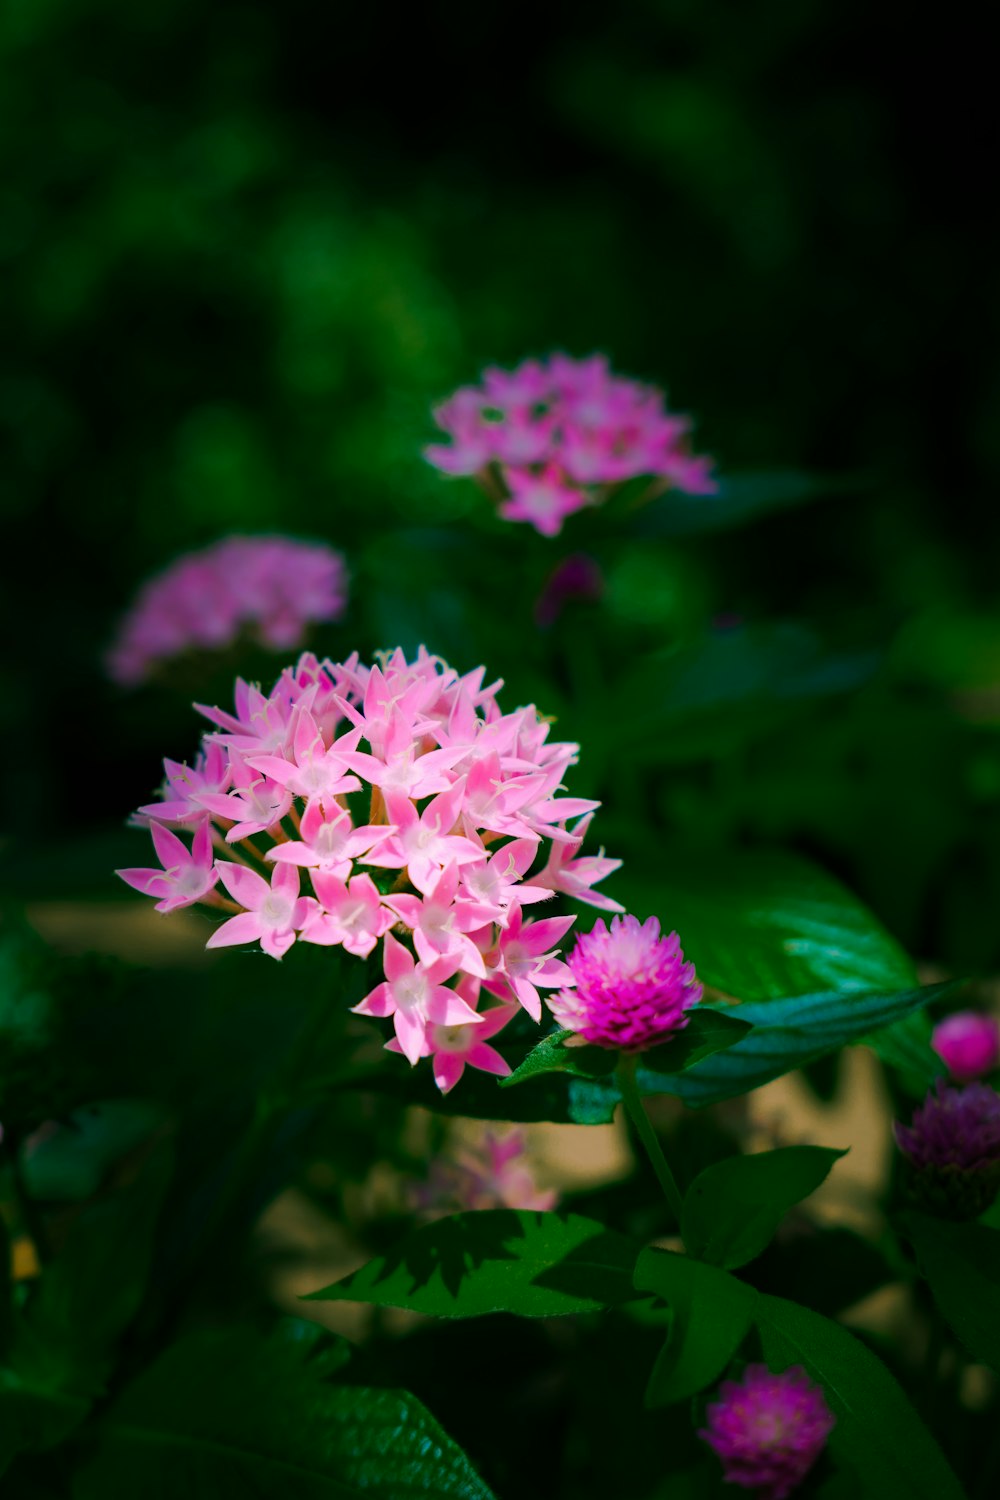 pink and white flower in tilt shift lens